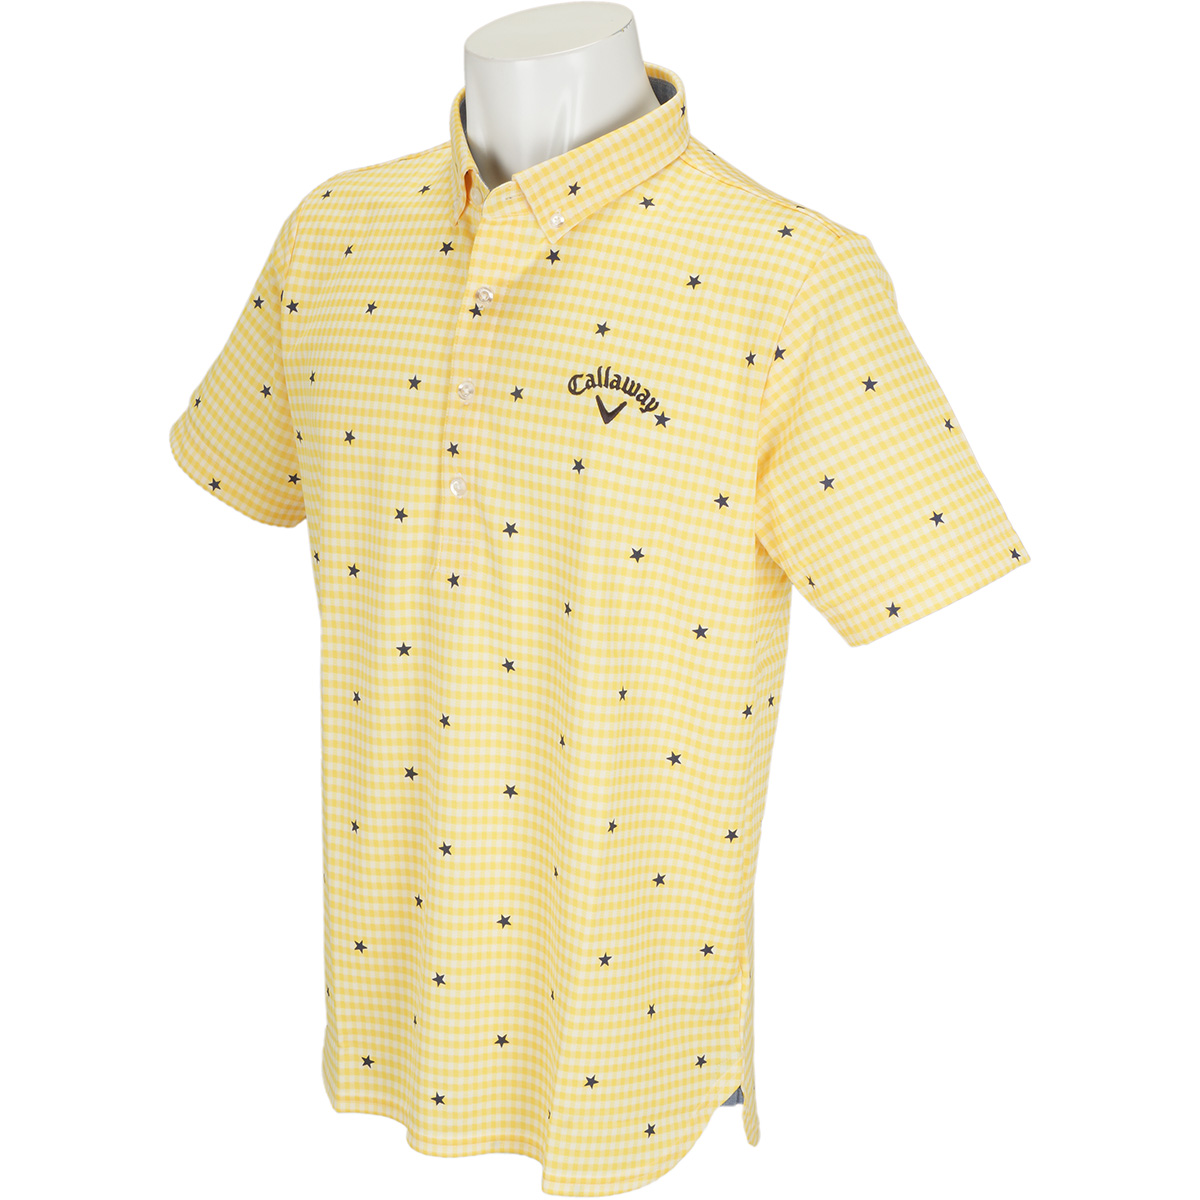  ボタンダウン -2度COOLギンガム カラー半袖ポロシャツ 